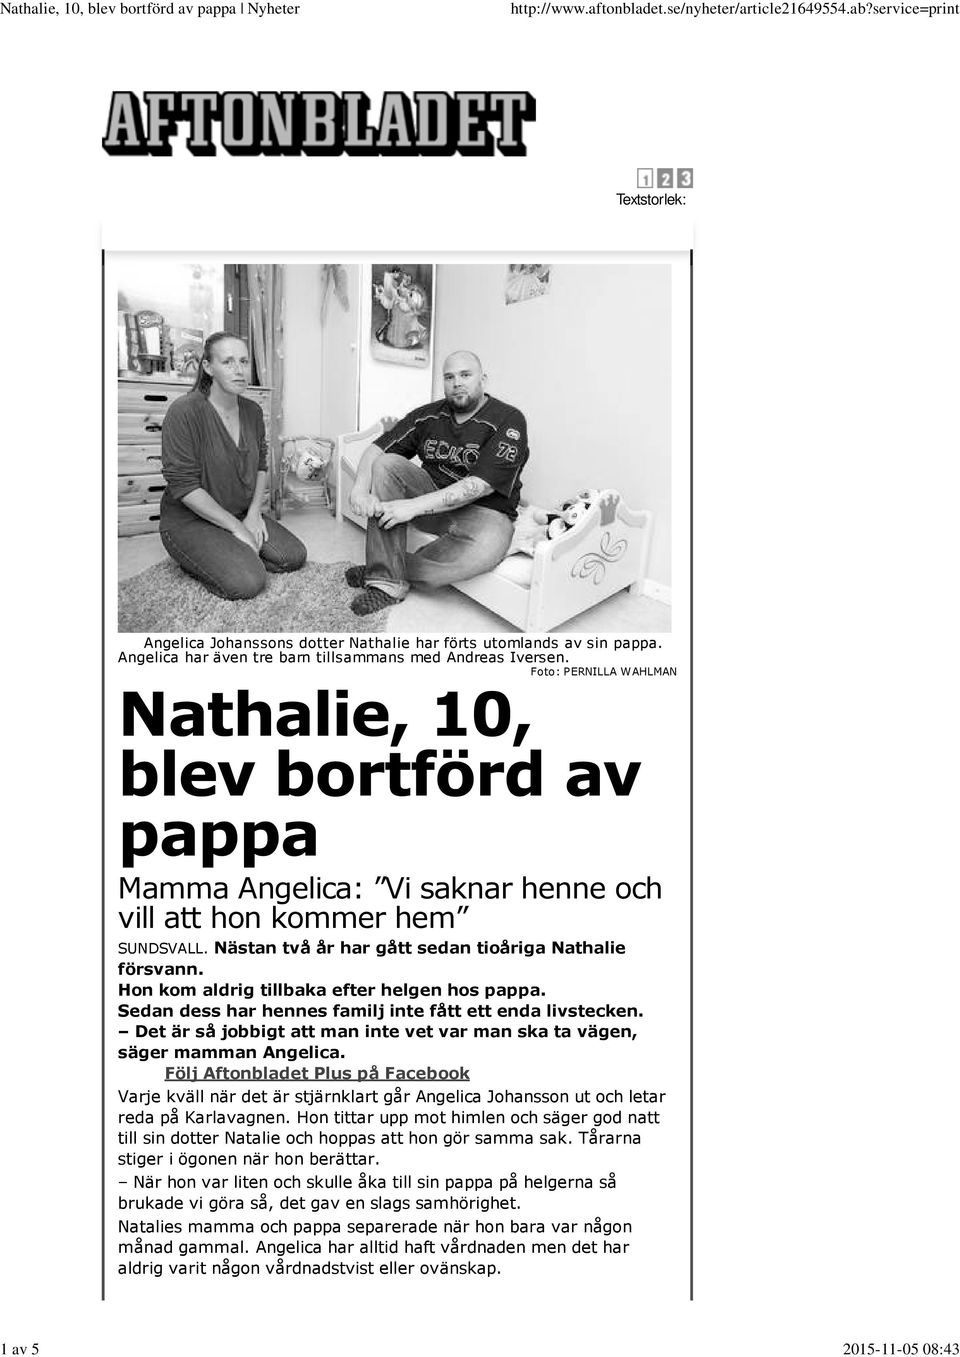 Det är så jobbigt man inte vet var man ska ta vägen, säger mamman. Följ Aftonbladet Plus på Facebook Varje kväll när det är stjärnklart går Johansson ut letar reda på Karlavagnen.